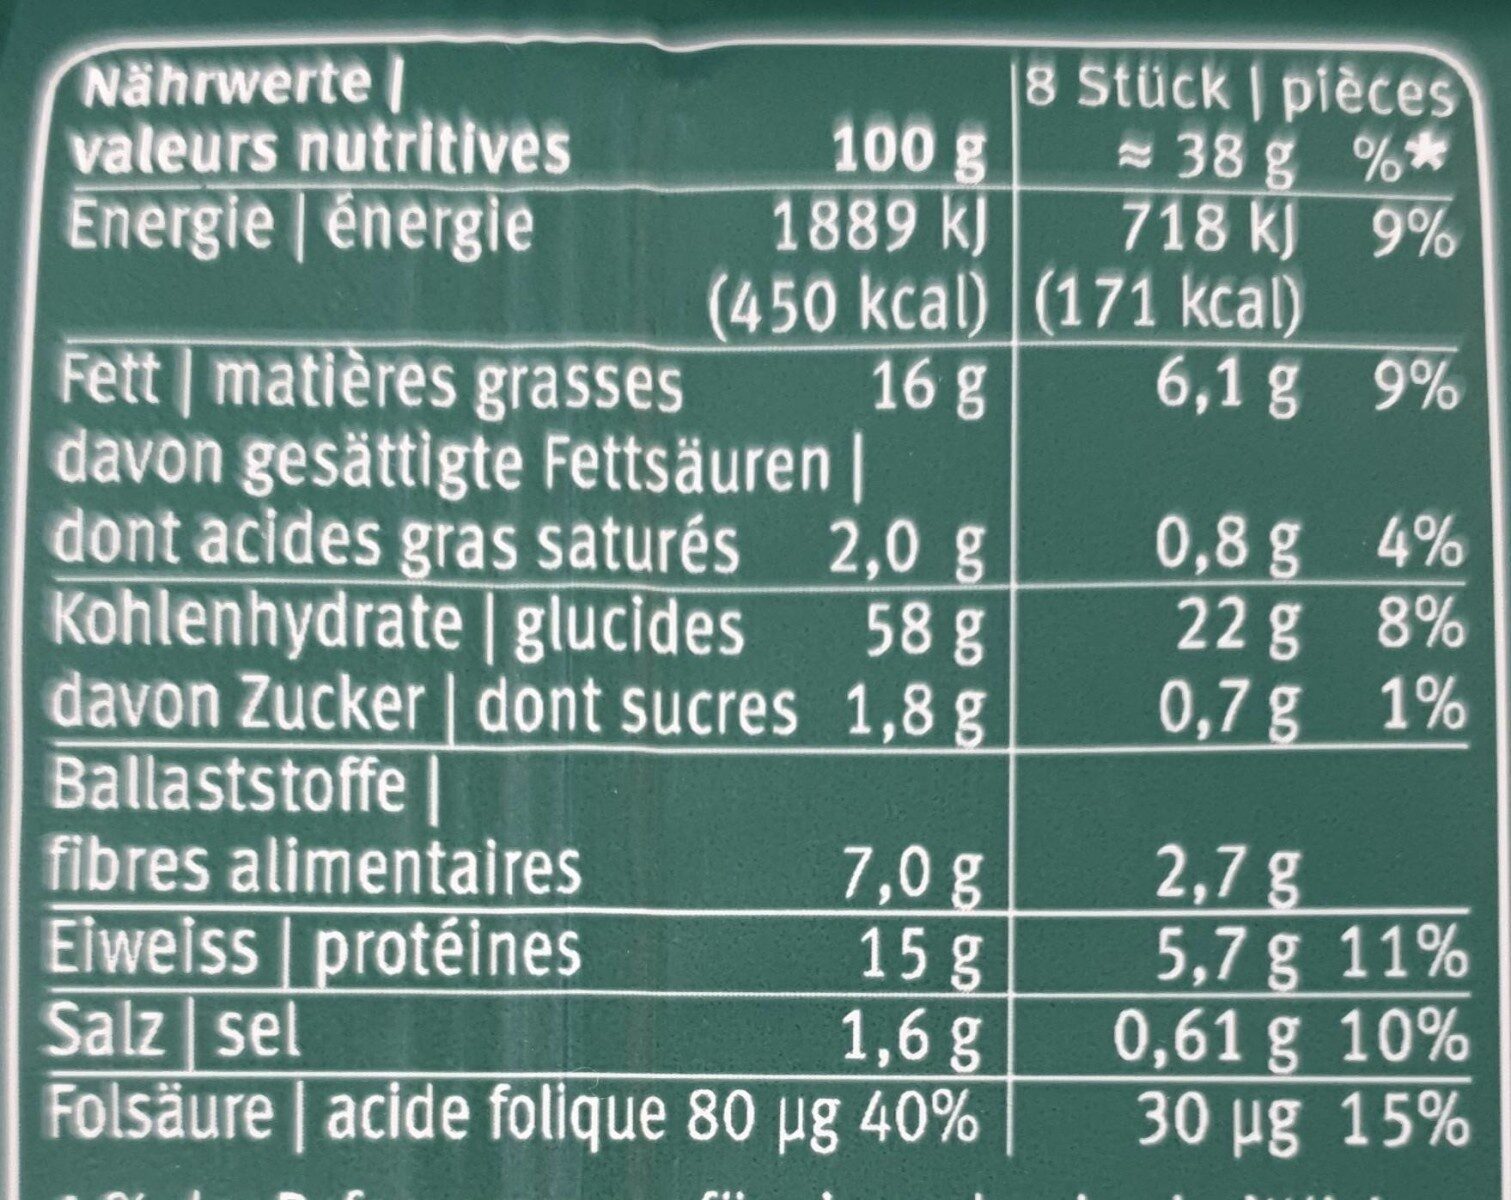 Blévita Graines de Courge - Voedingswaarden - fr